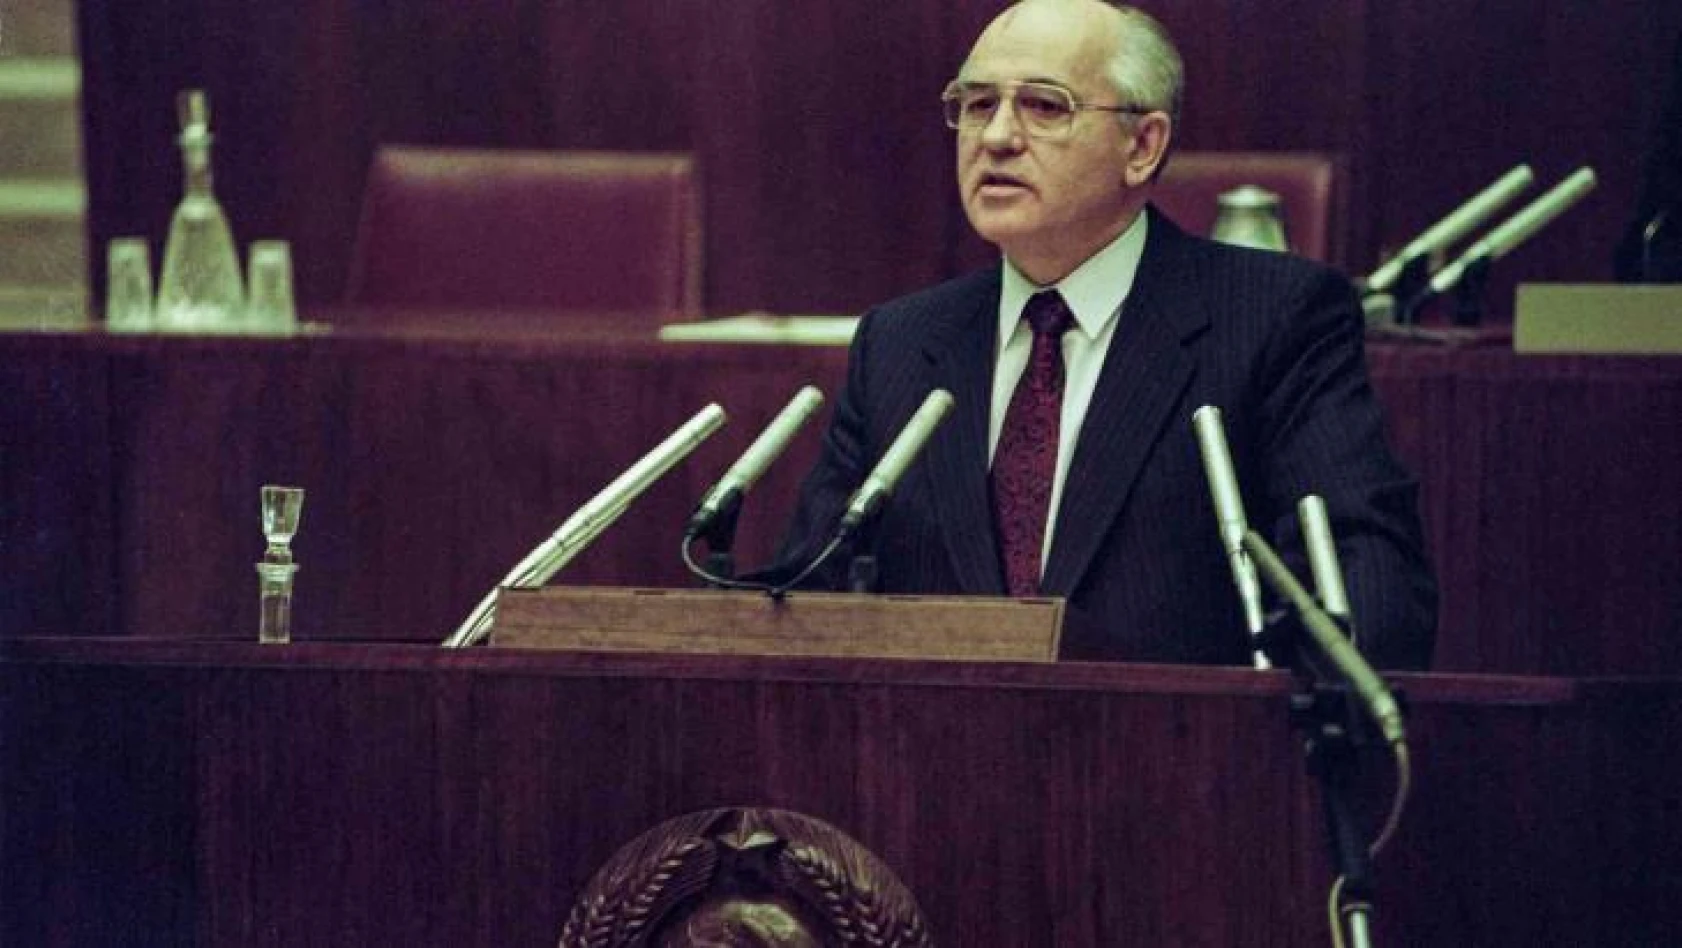 Sovyetler Birliği'nin son lideri Gorbaçov için 3 Eylül'de cenaze töreni düzenlenecek